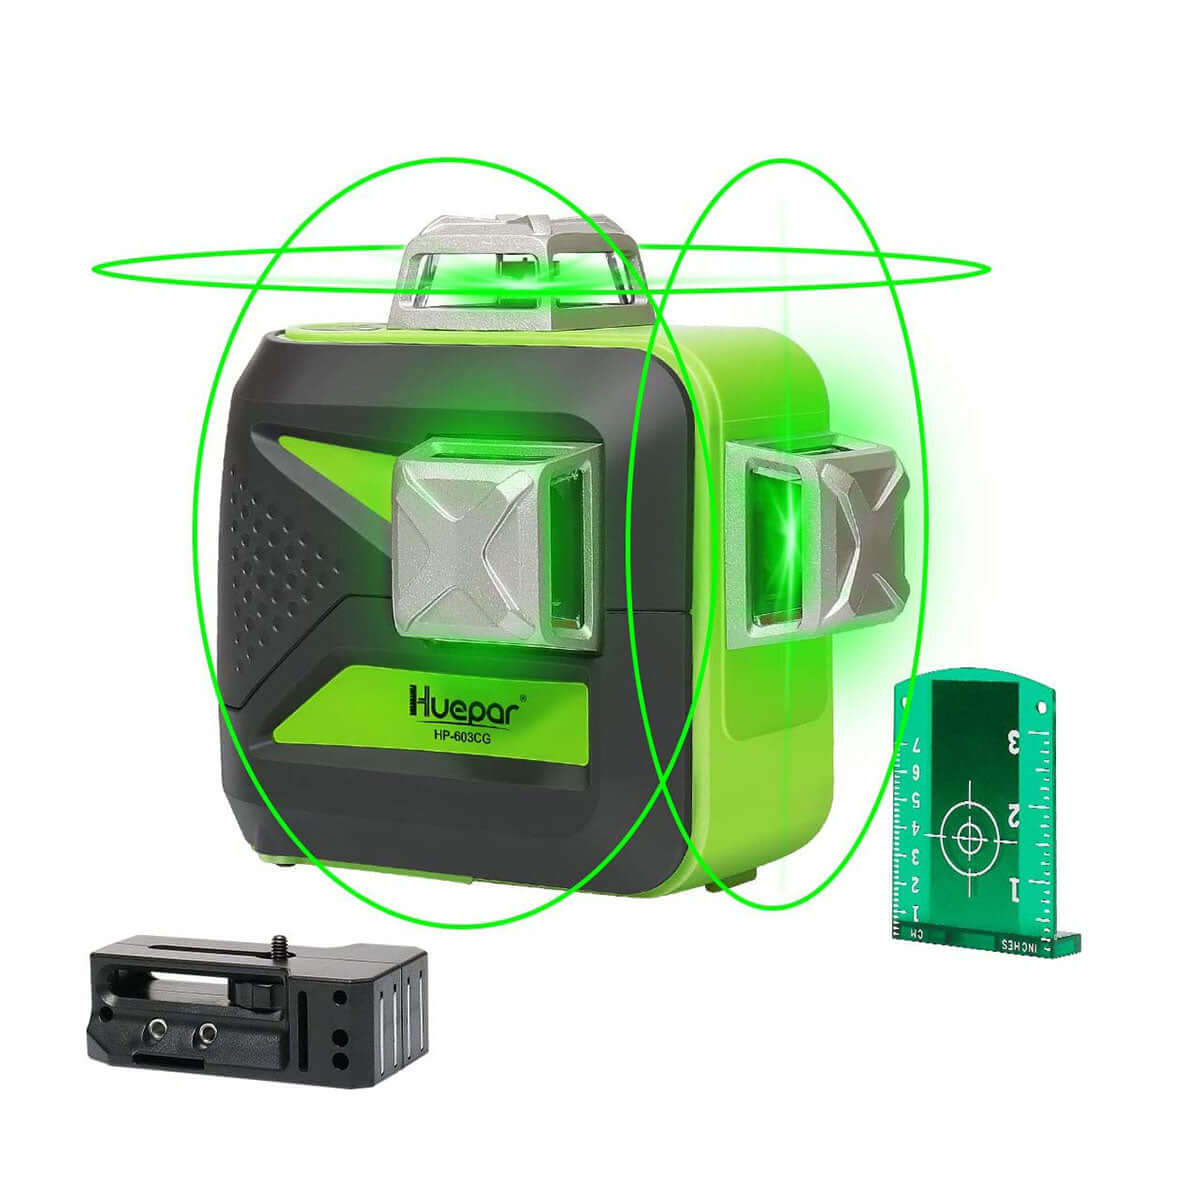 Huepar 603CG – selbstnivellierender 3D-Laser mit grünem Strahl, 3 x 360°